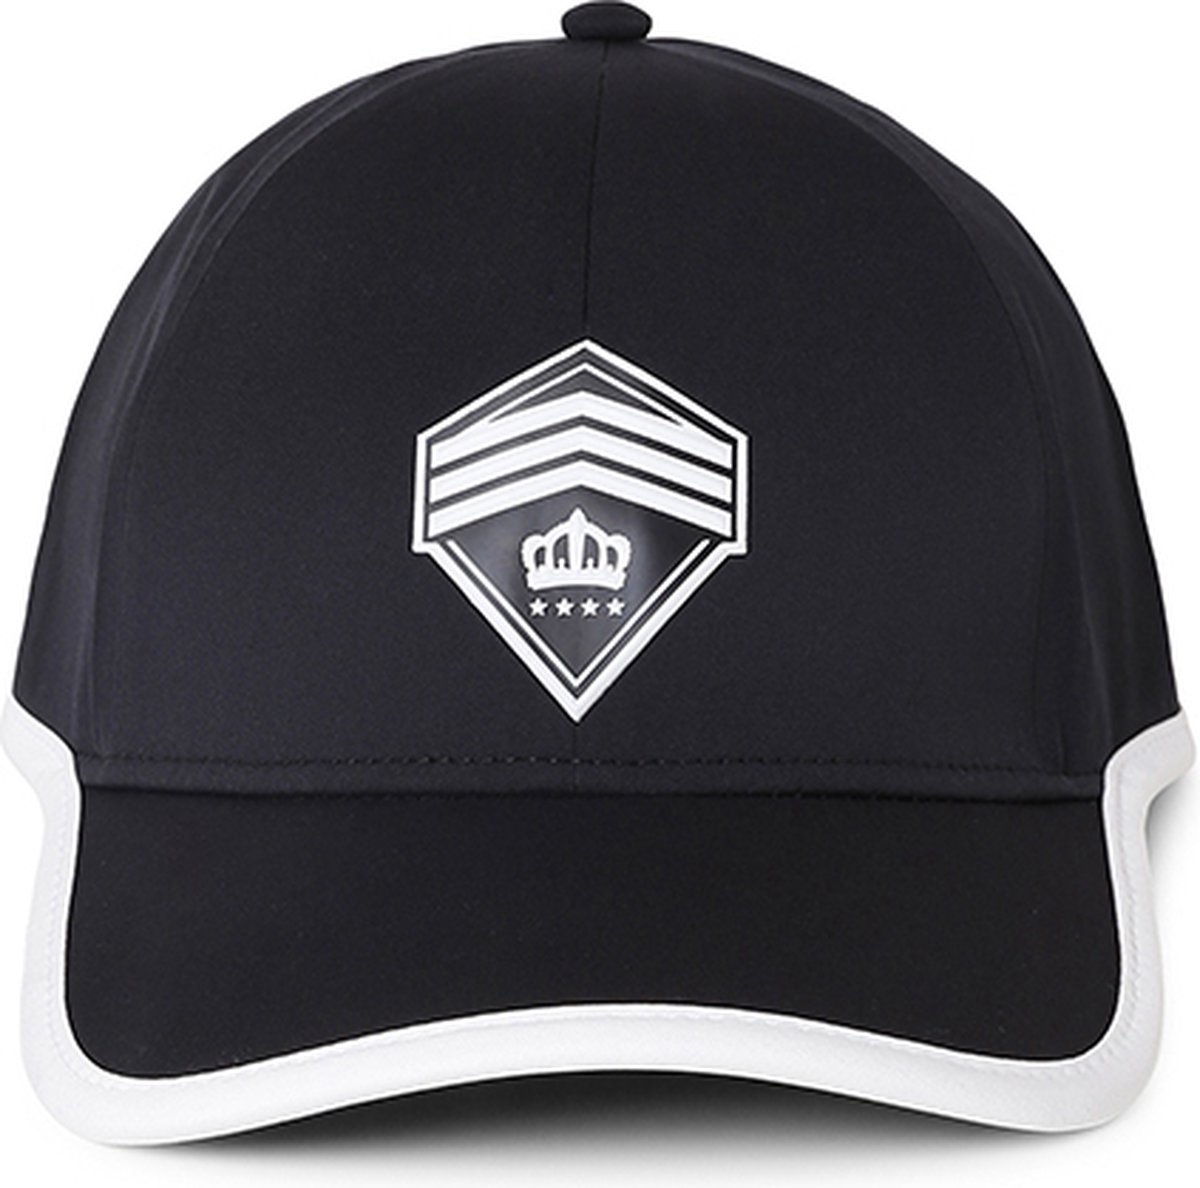 Hassing1894 model KYSU - cap - baseball cap - zwart - verstelbare pet - trendy - stijlvol - modieus – voor iedere gelegenheid – het hele jaar door